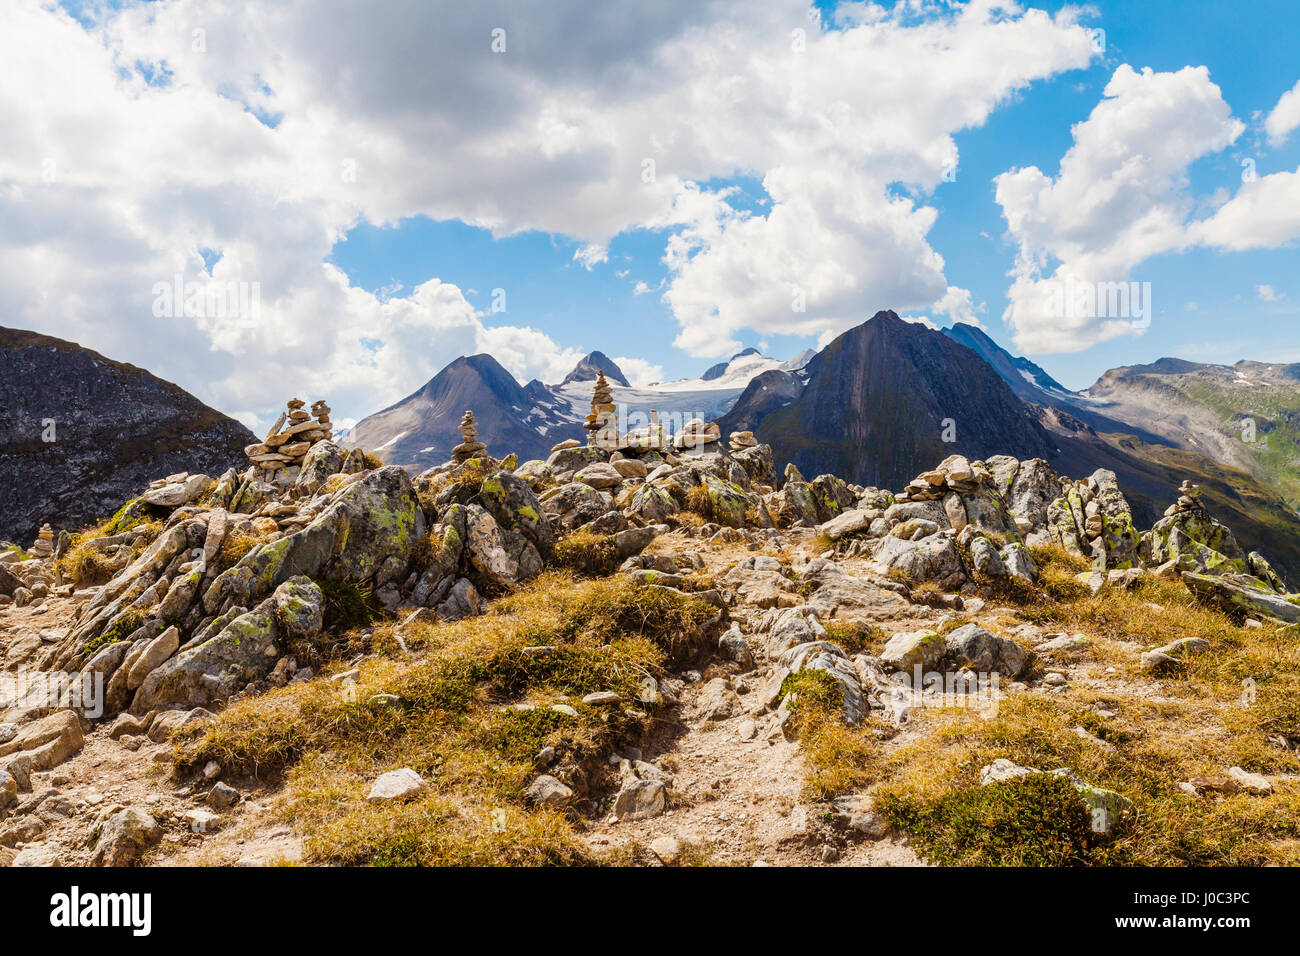 Pila di rocce in montagna, Santa Caterina Valfurva, Bormio, Italia Foto Stock